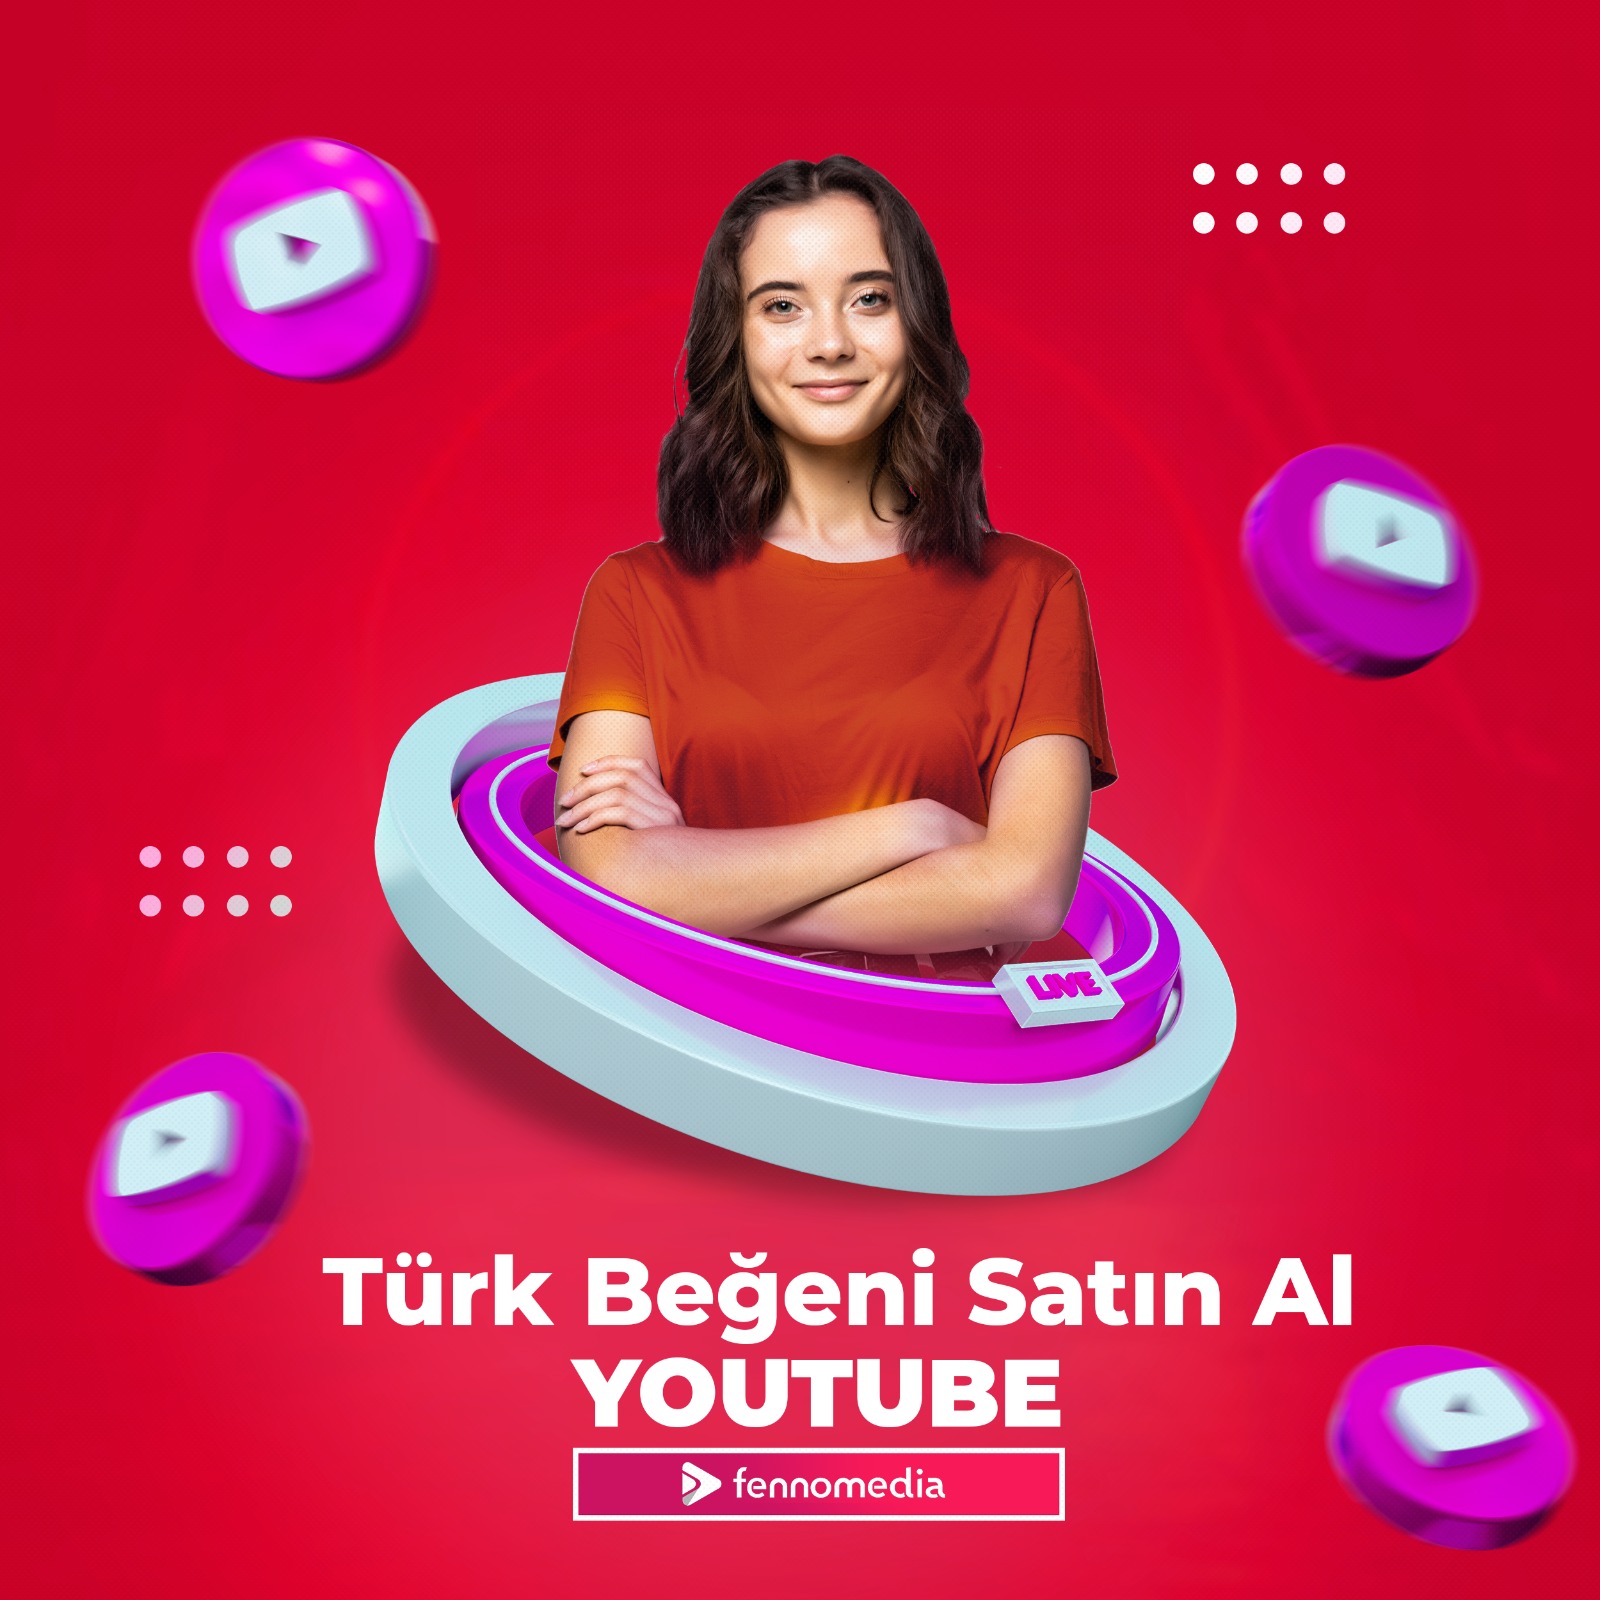 Youtube Türk beğeni satın al